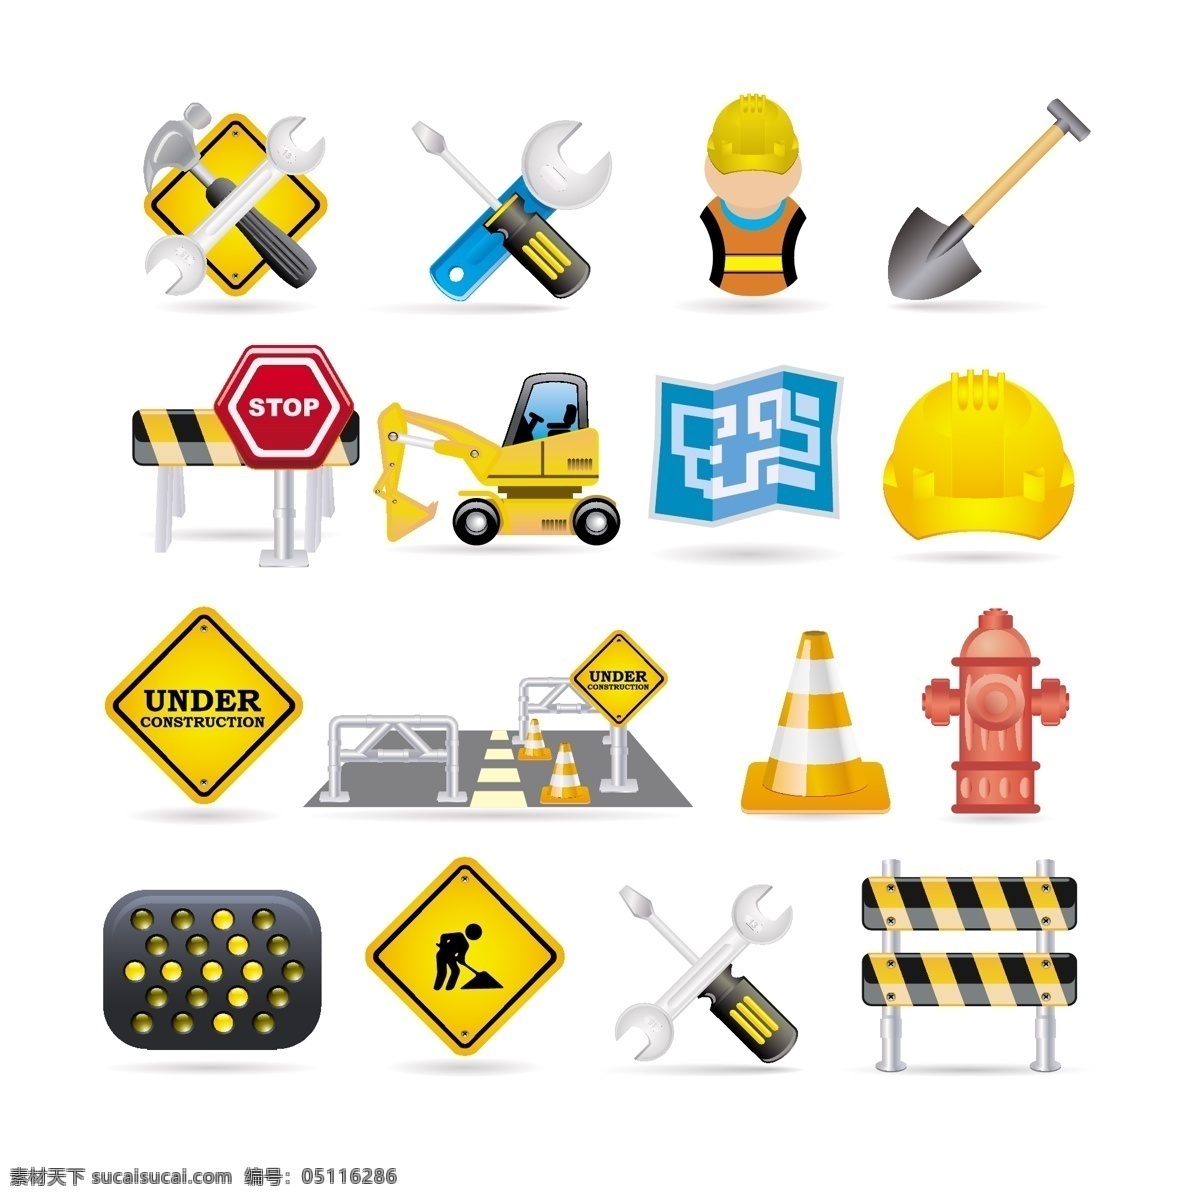 维护 维修 标志 矢量 图标 警告 提示 危险 修路 工人 挖车 安全帽 工具 路障 消防栓 标识 矢量素材 矢量图标 小图标 标识标志图标